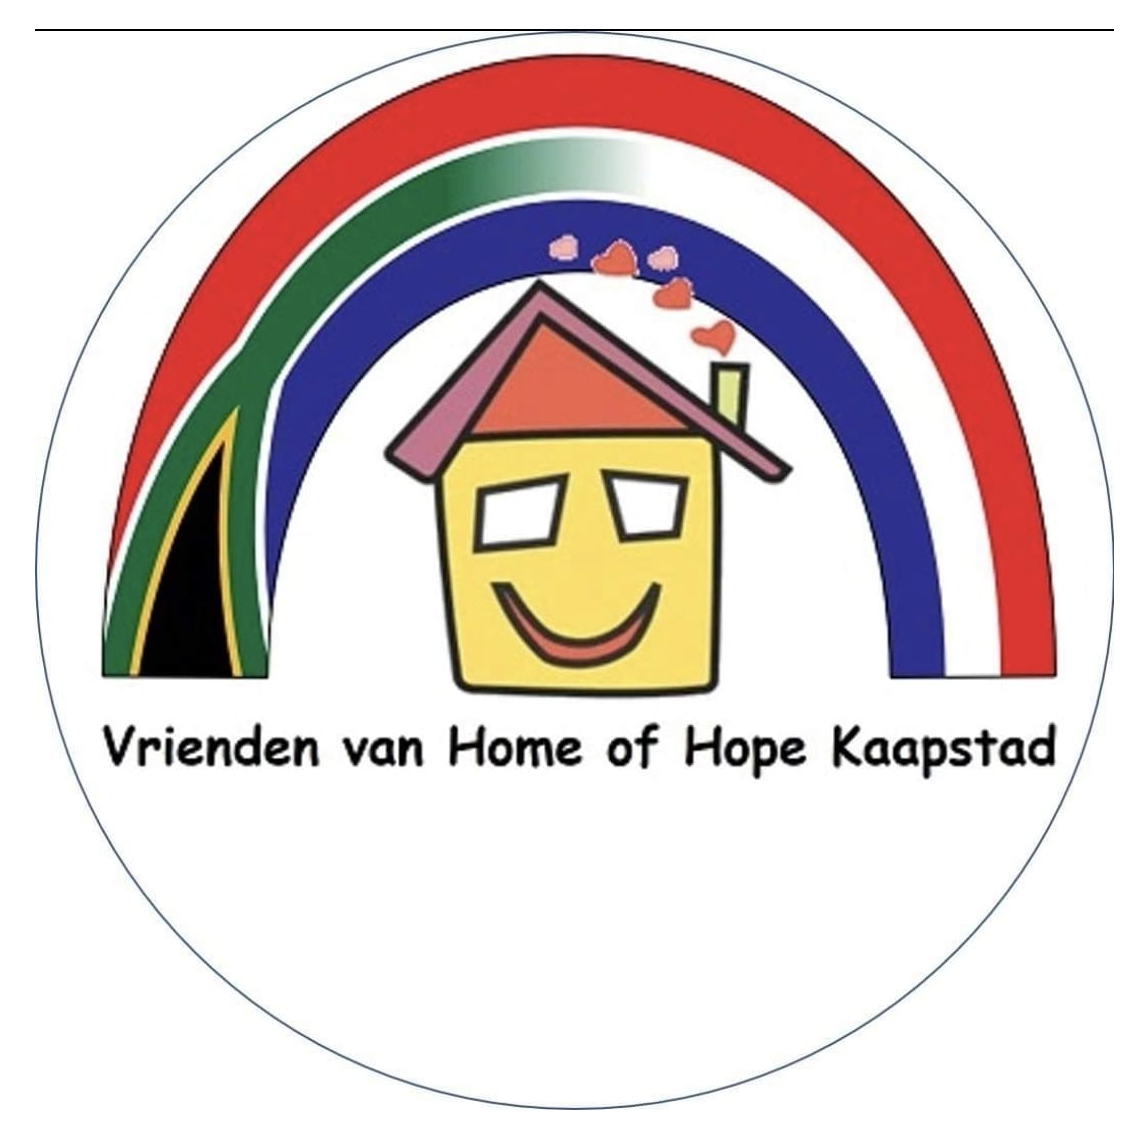 Stichting Vrienden van Home of Hope